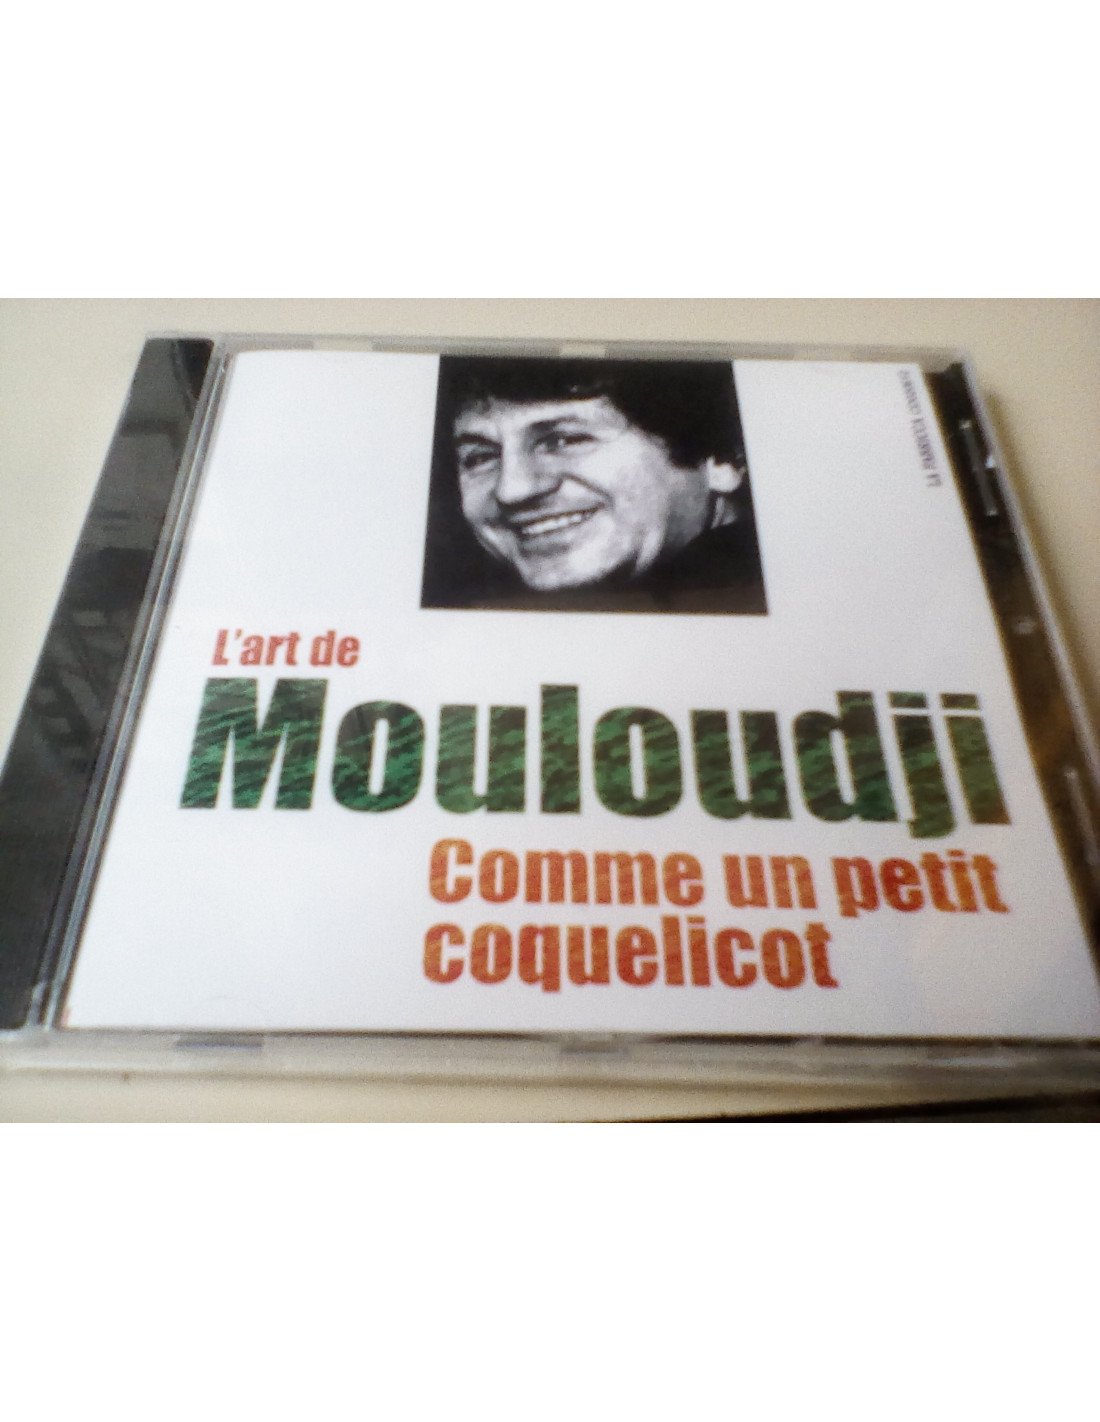 CD L'art de Mouloudji - Comme un petit coquelicot